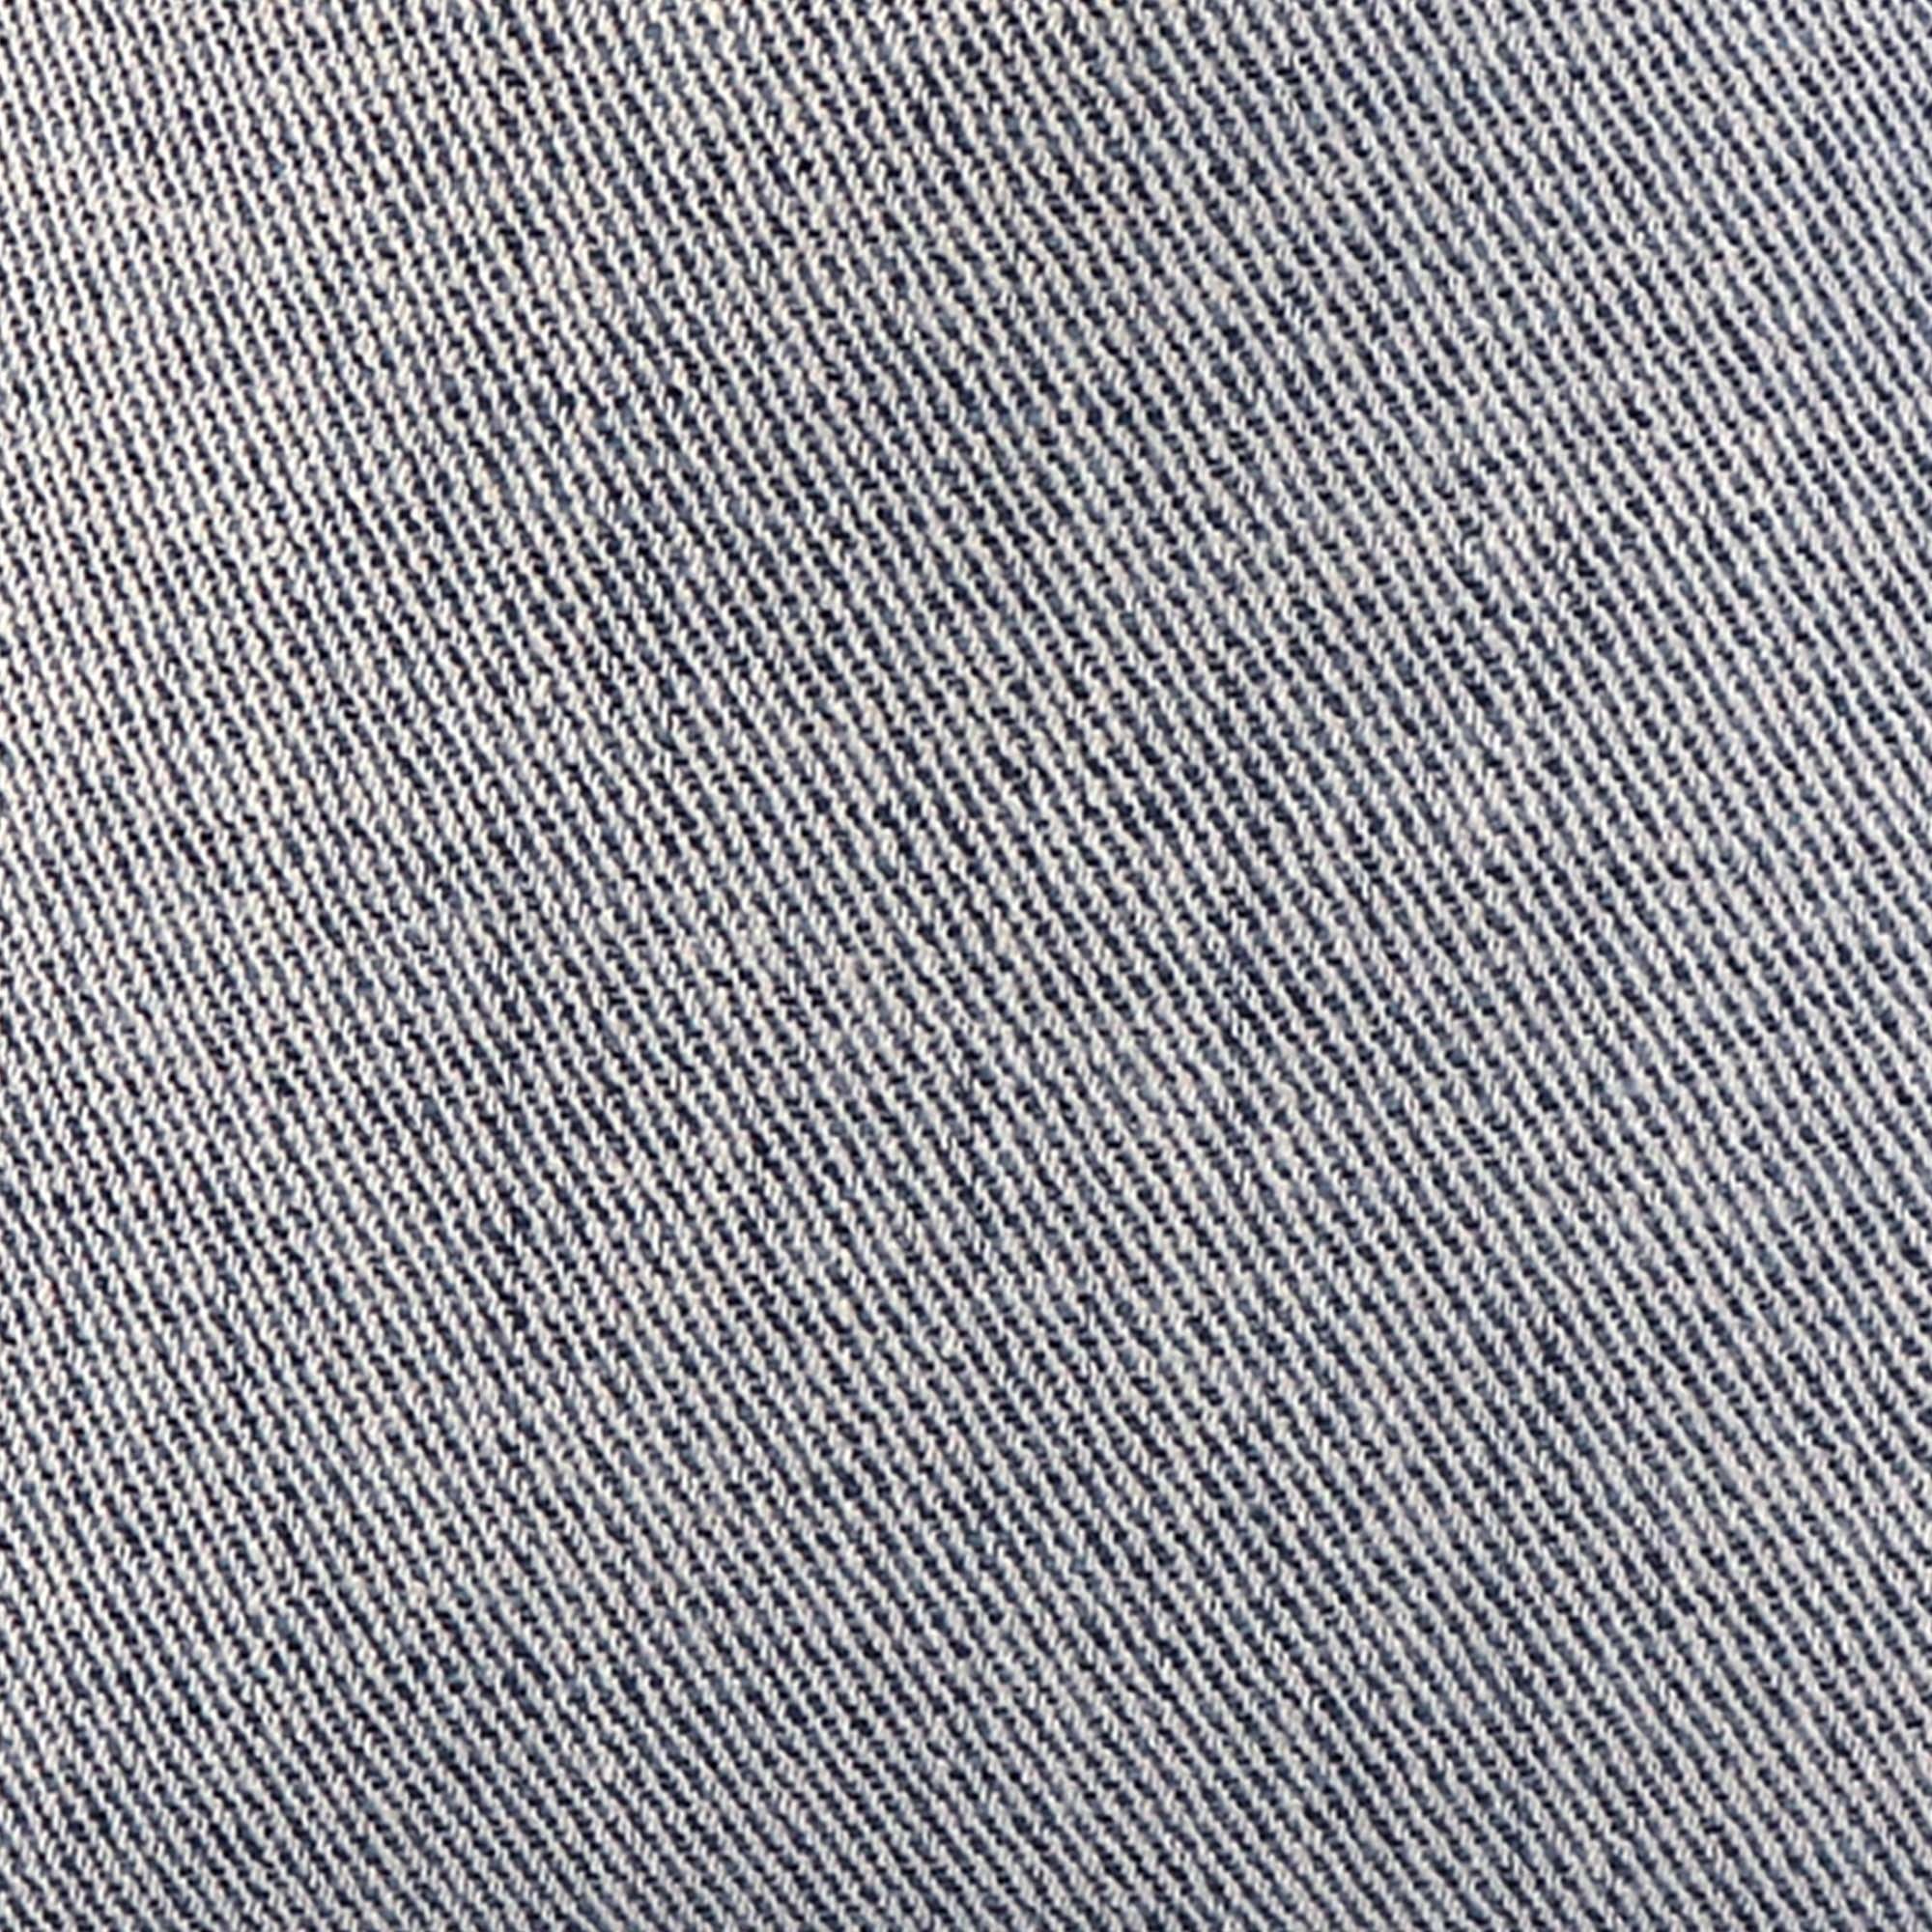 Everett Performance Twill Denim / 4x4 inch Fabric Swatch - Chloe